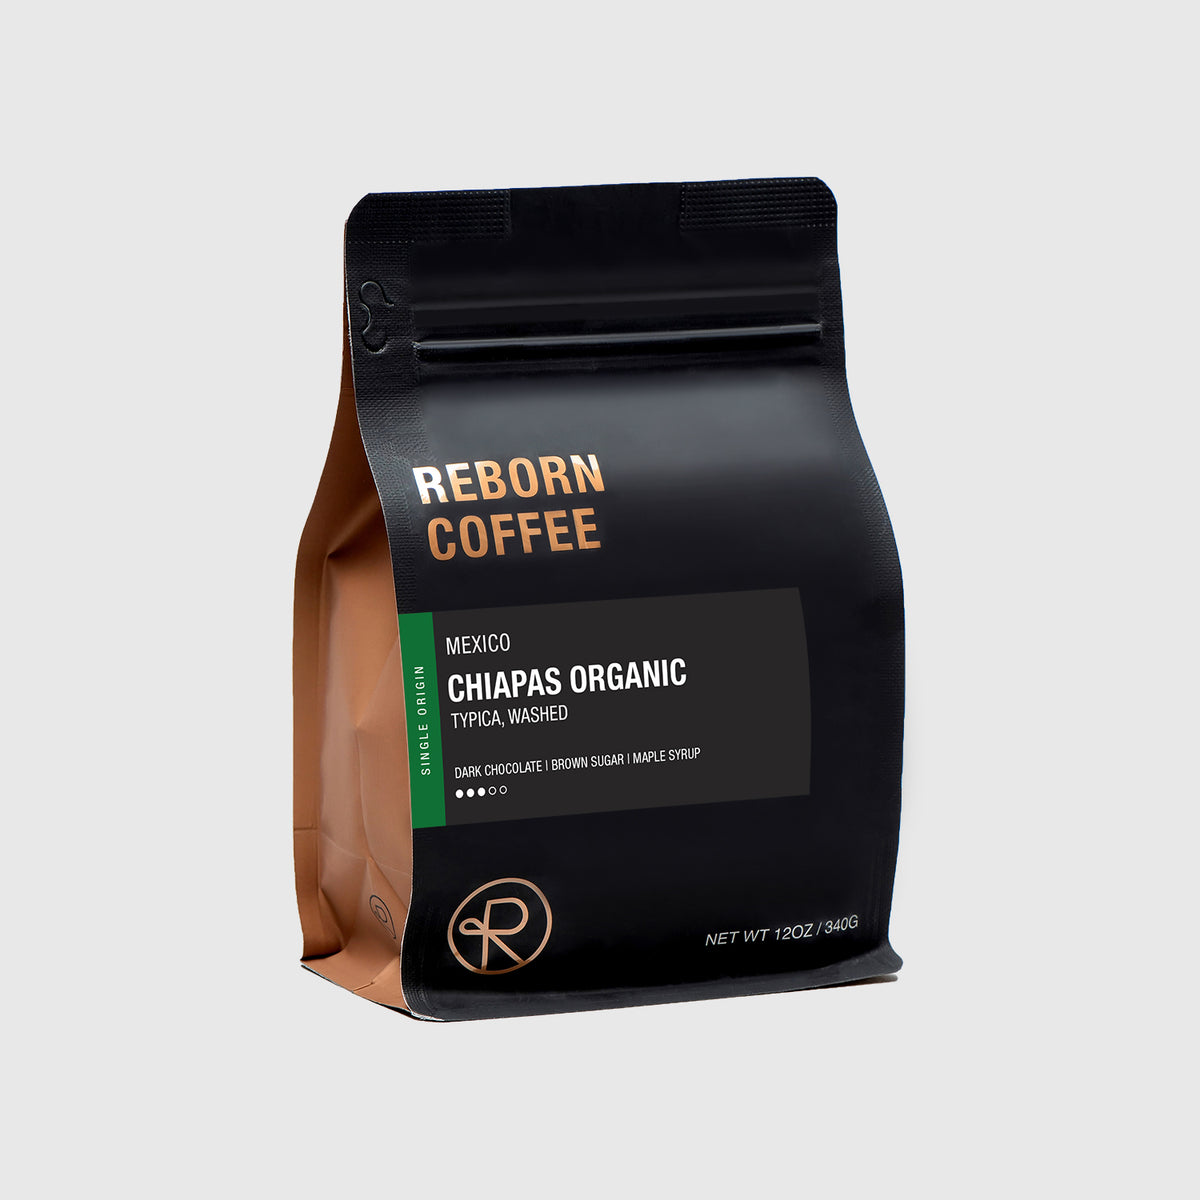 REBORN COFFEE - CABAZON - 74 Photos & 41 Reviews - 48750 Seminole